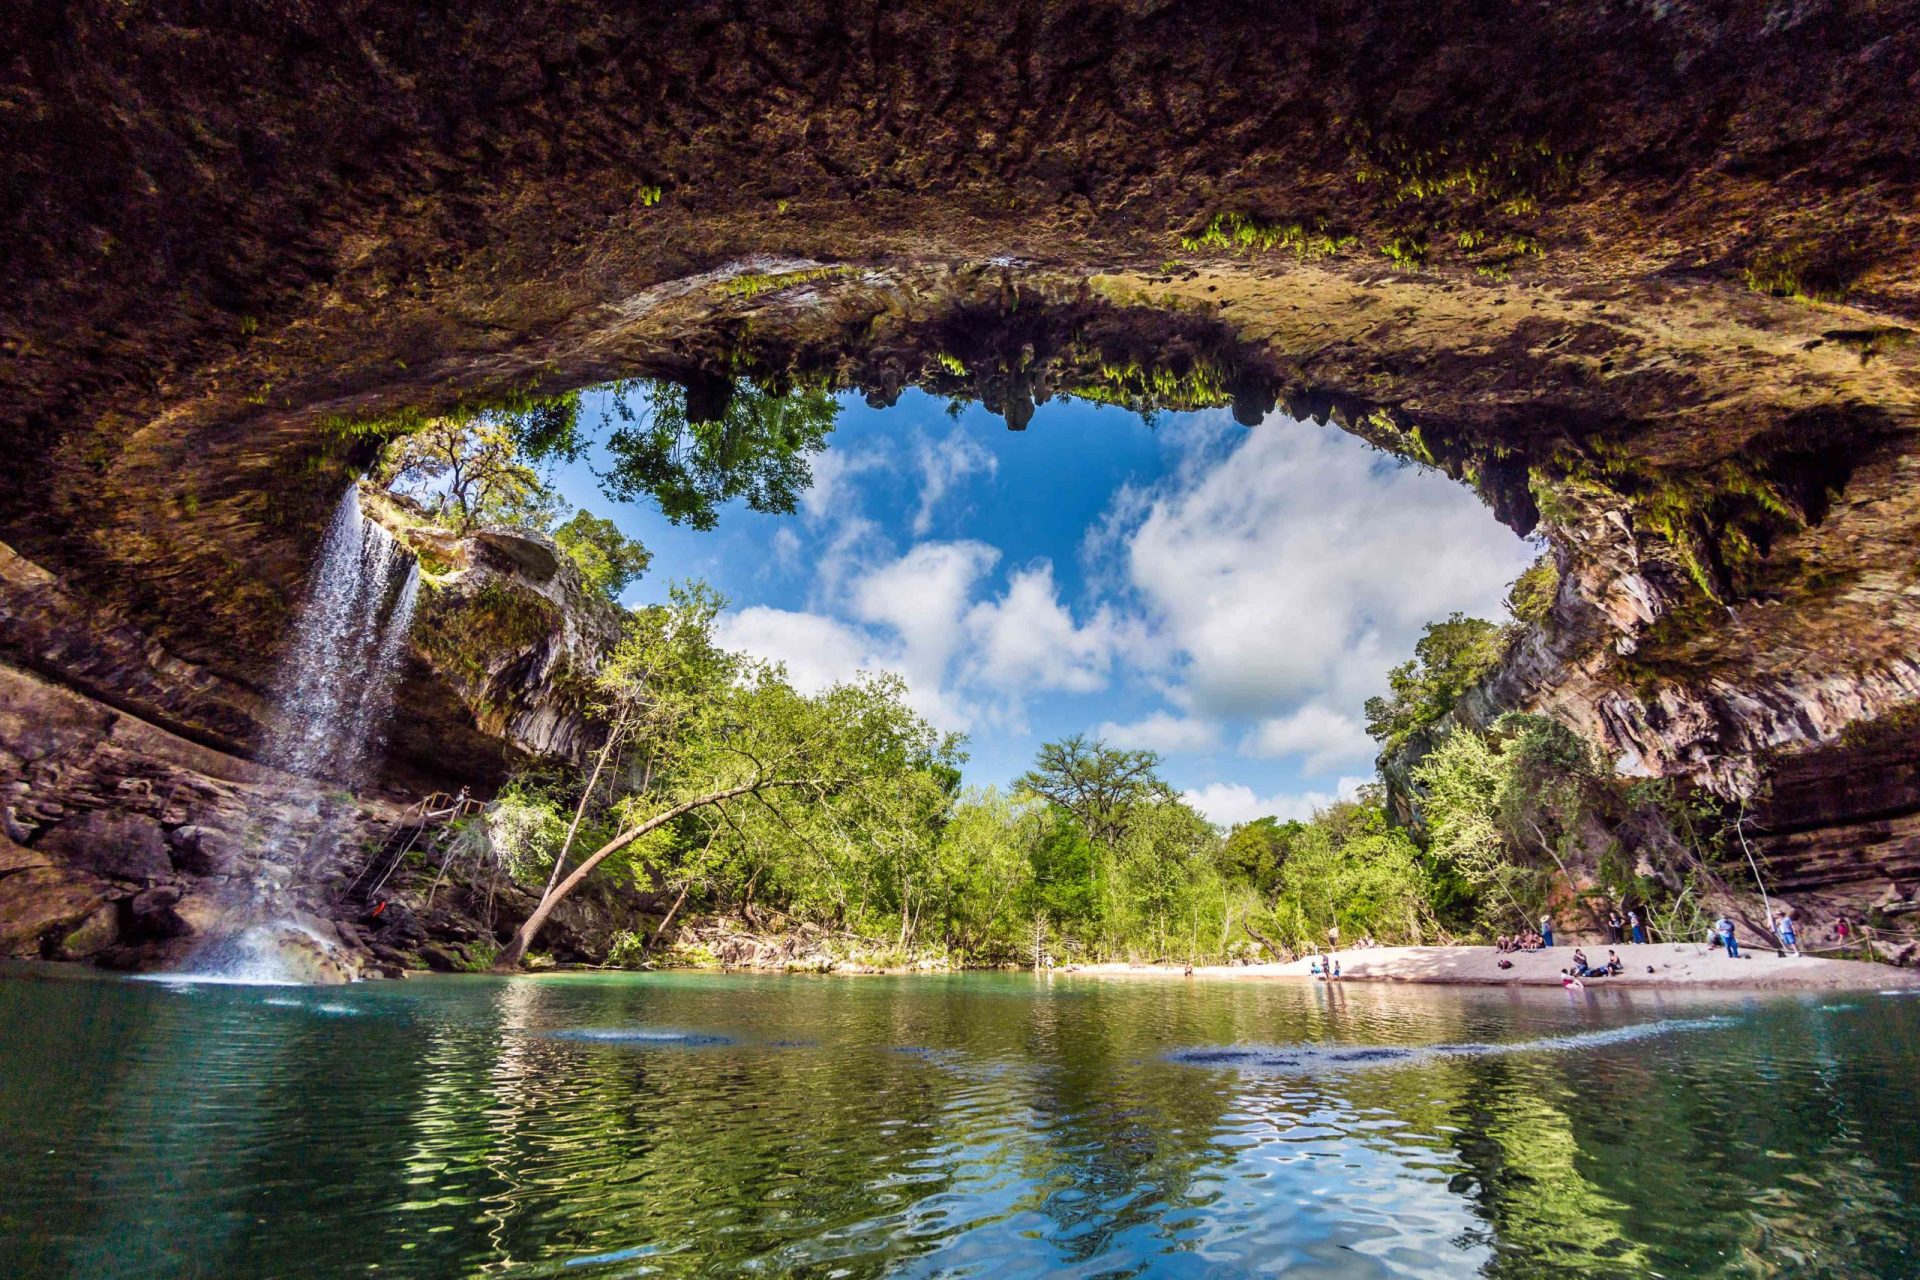 La gruta que parece una caverna en la Reserva de la Piscina Hamilton, con una cascada que fluye hacia abajo, se abre a un brillante cielo de verano